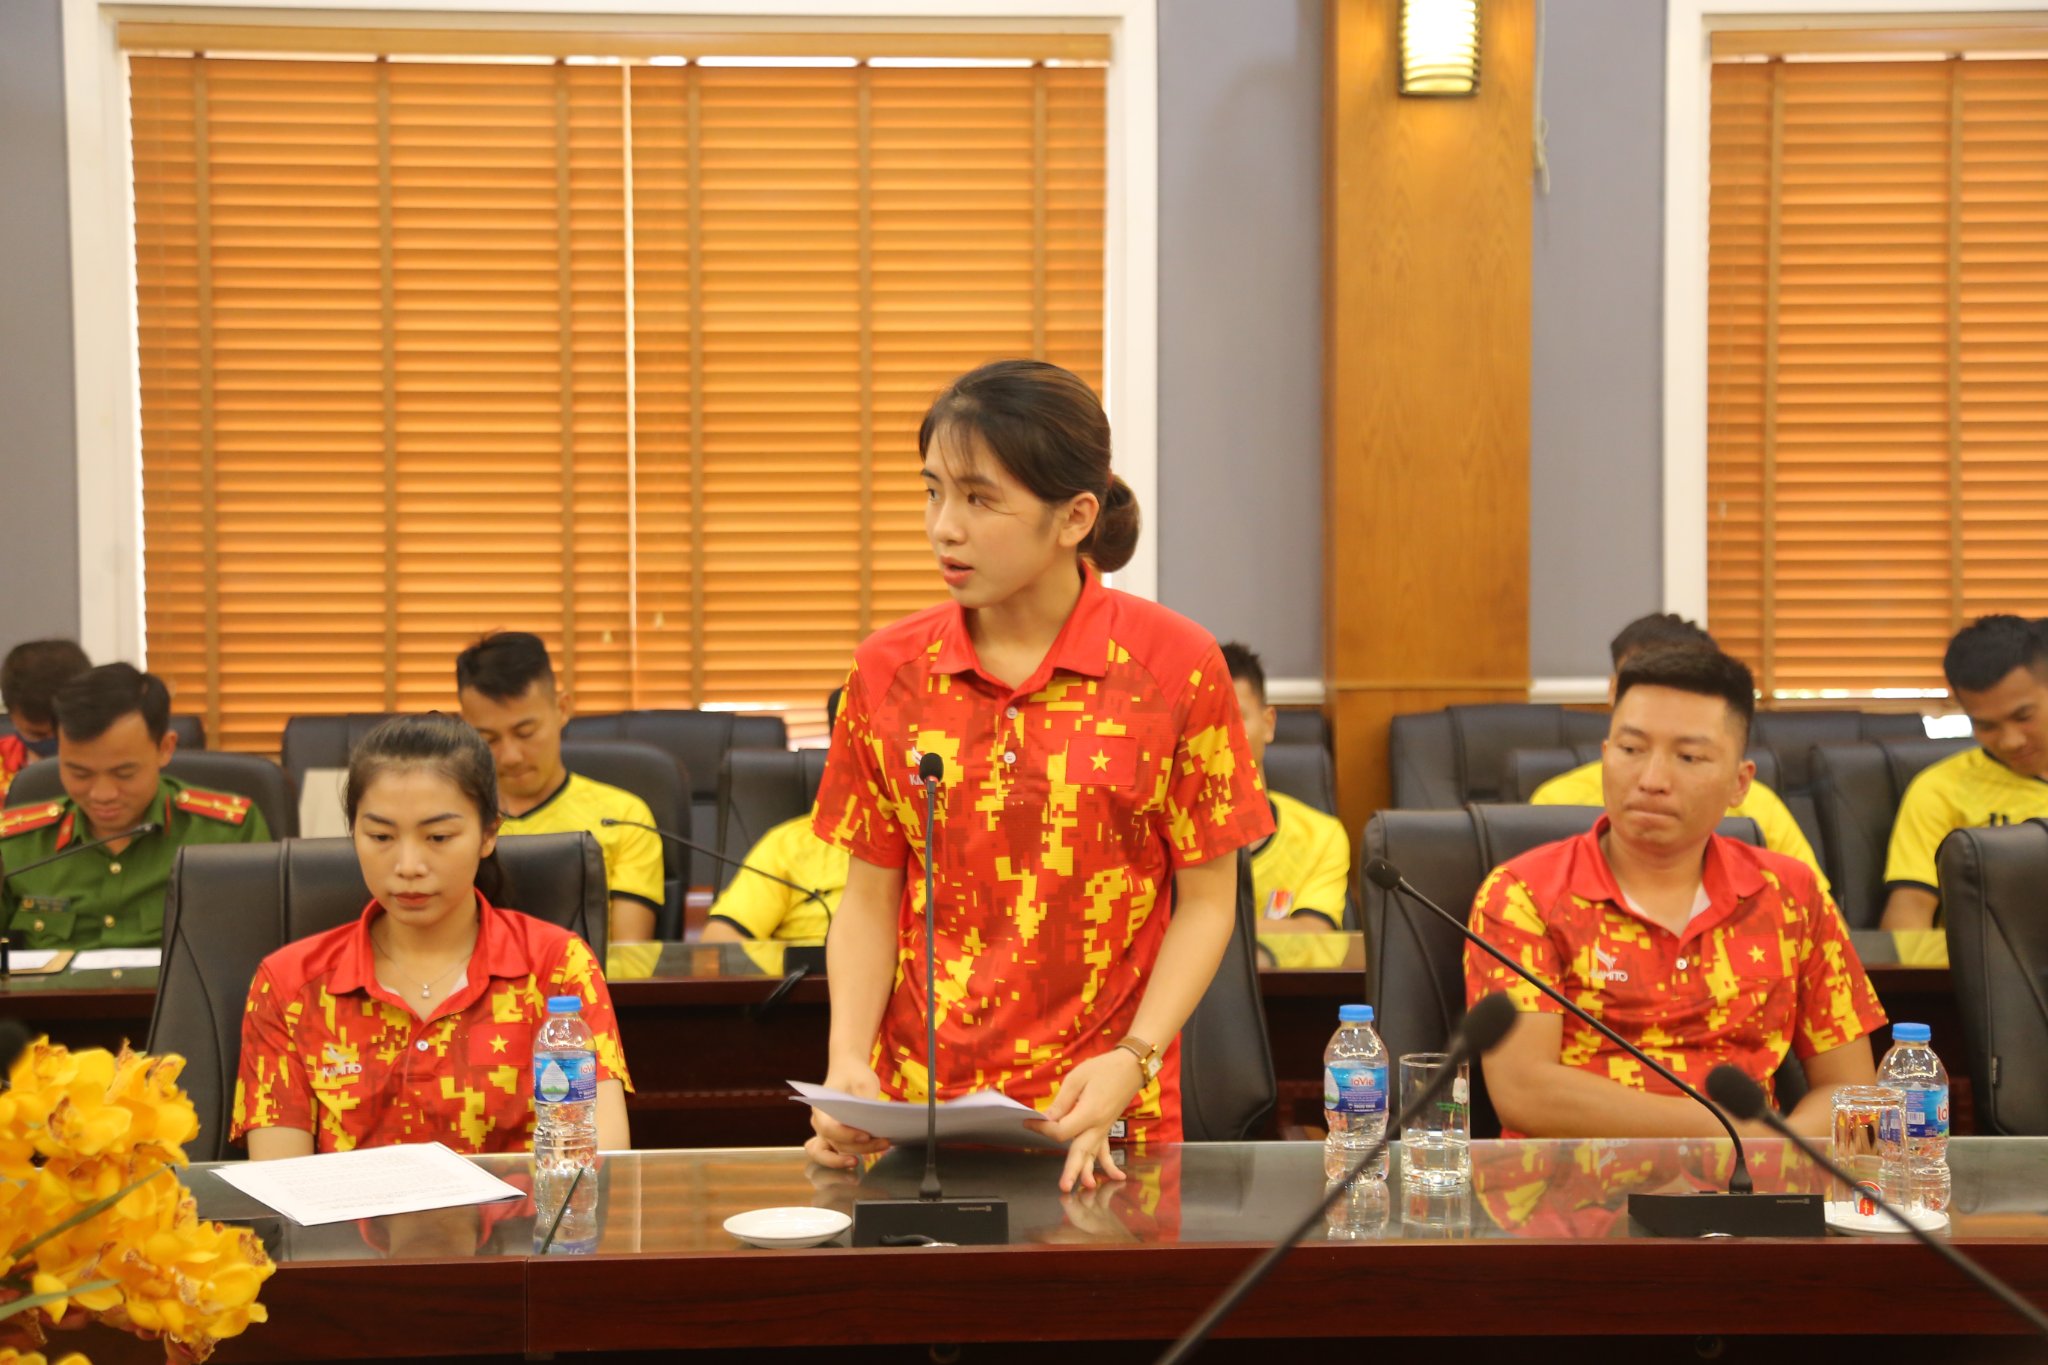 Đồng chí Nguyễn Khánh Huyền - đại diện các vận động viên phát biểu thể hiện quyết tâm thi đấu tại Hội thao